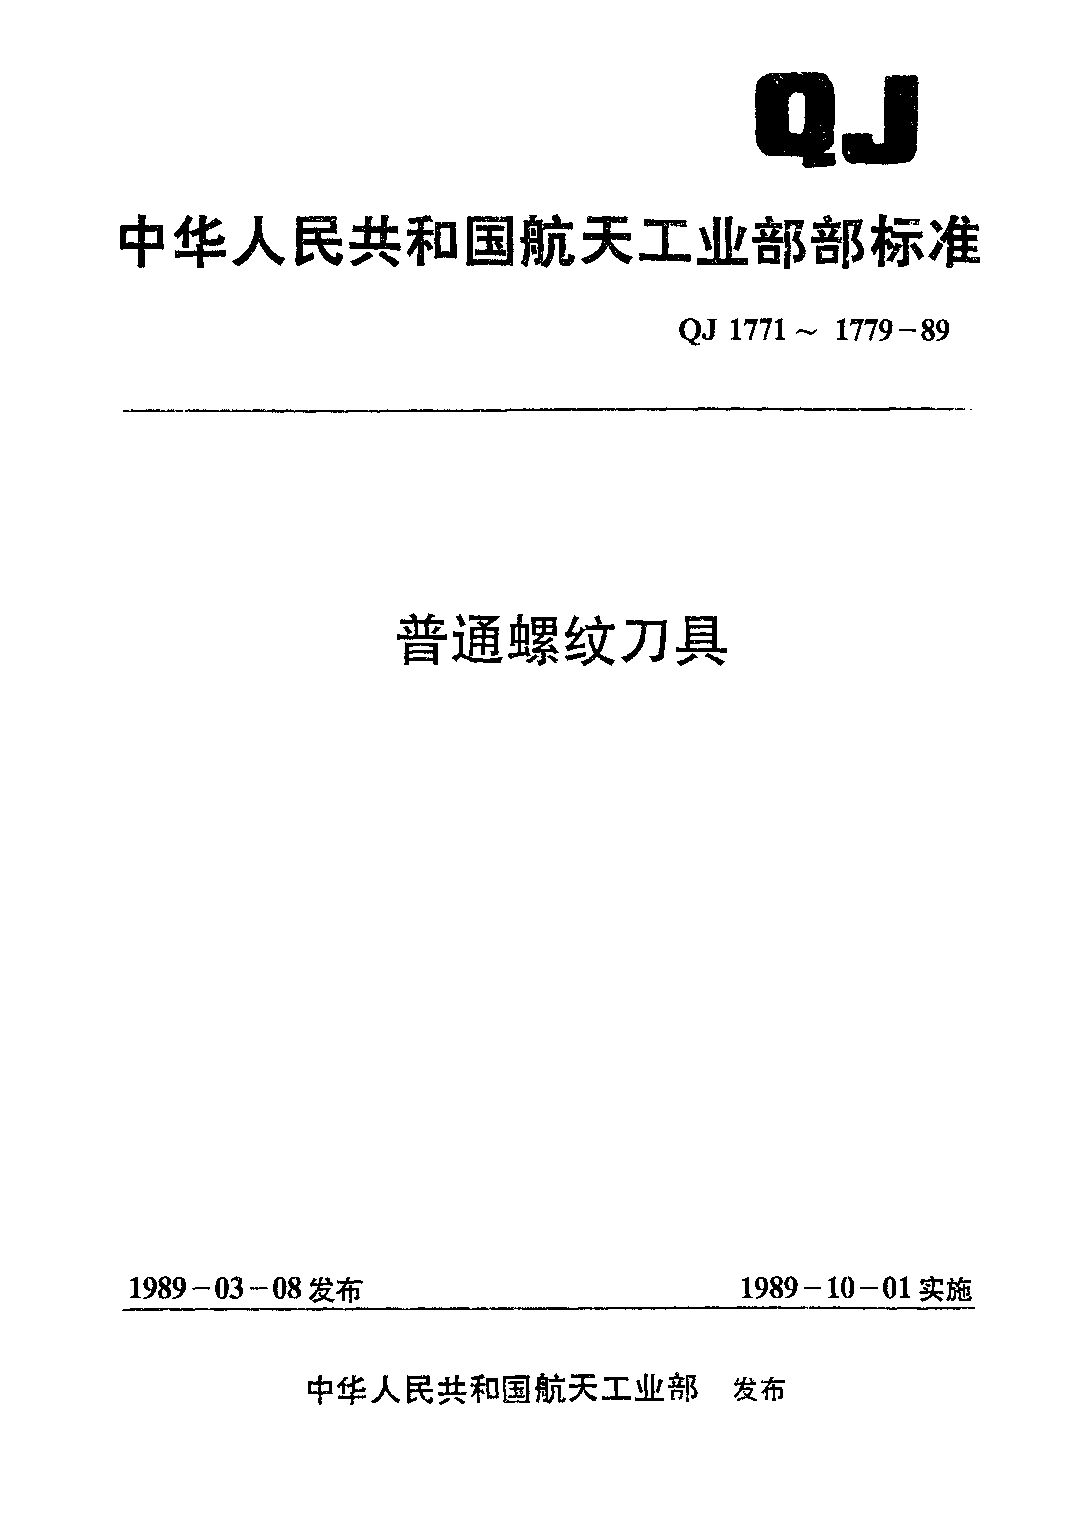 QJ 1773-1989封面图